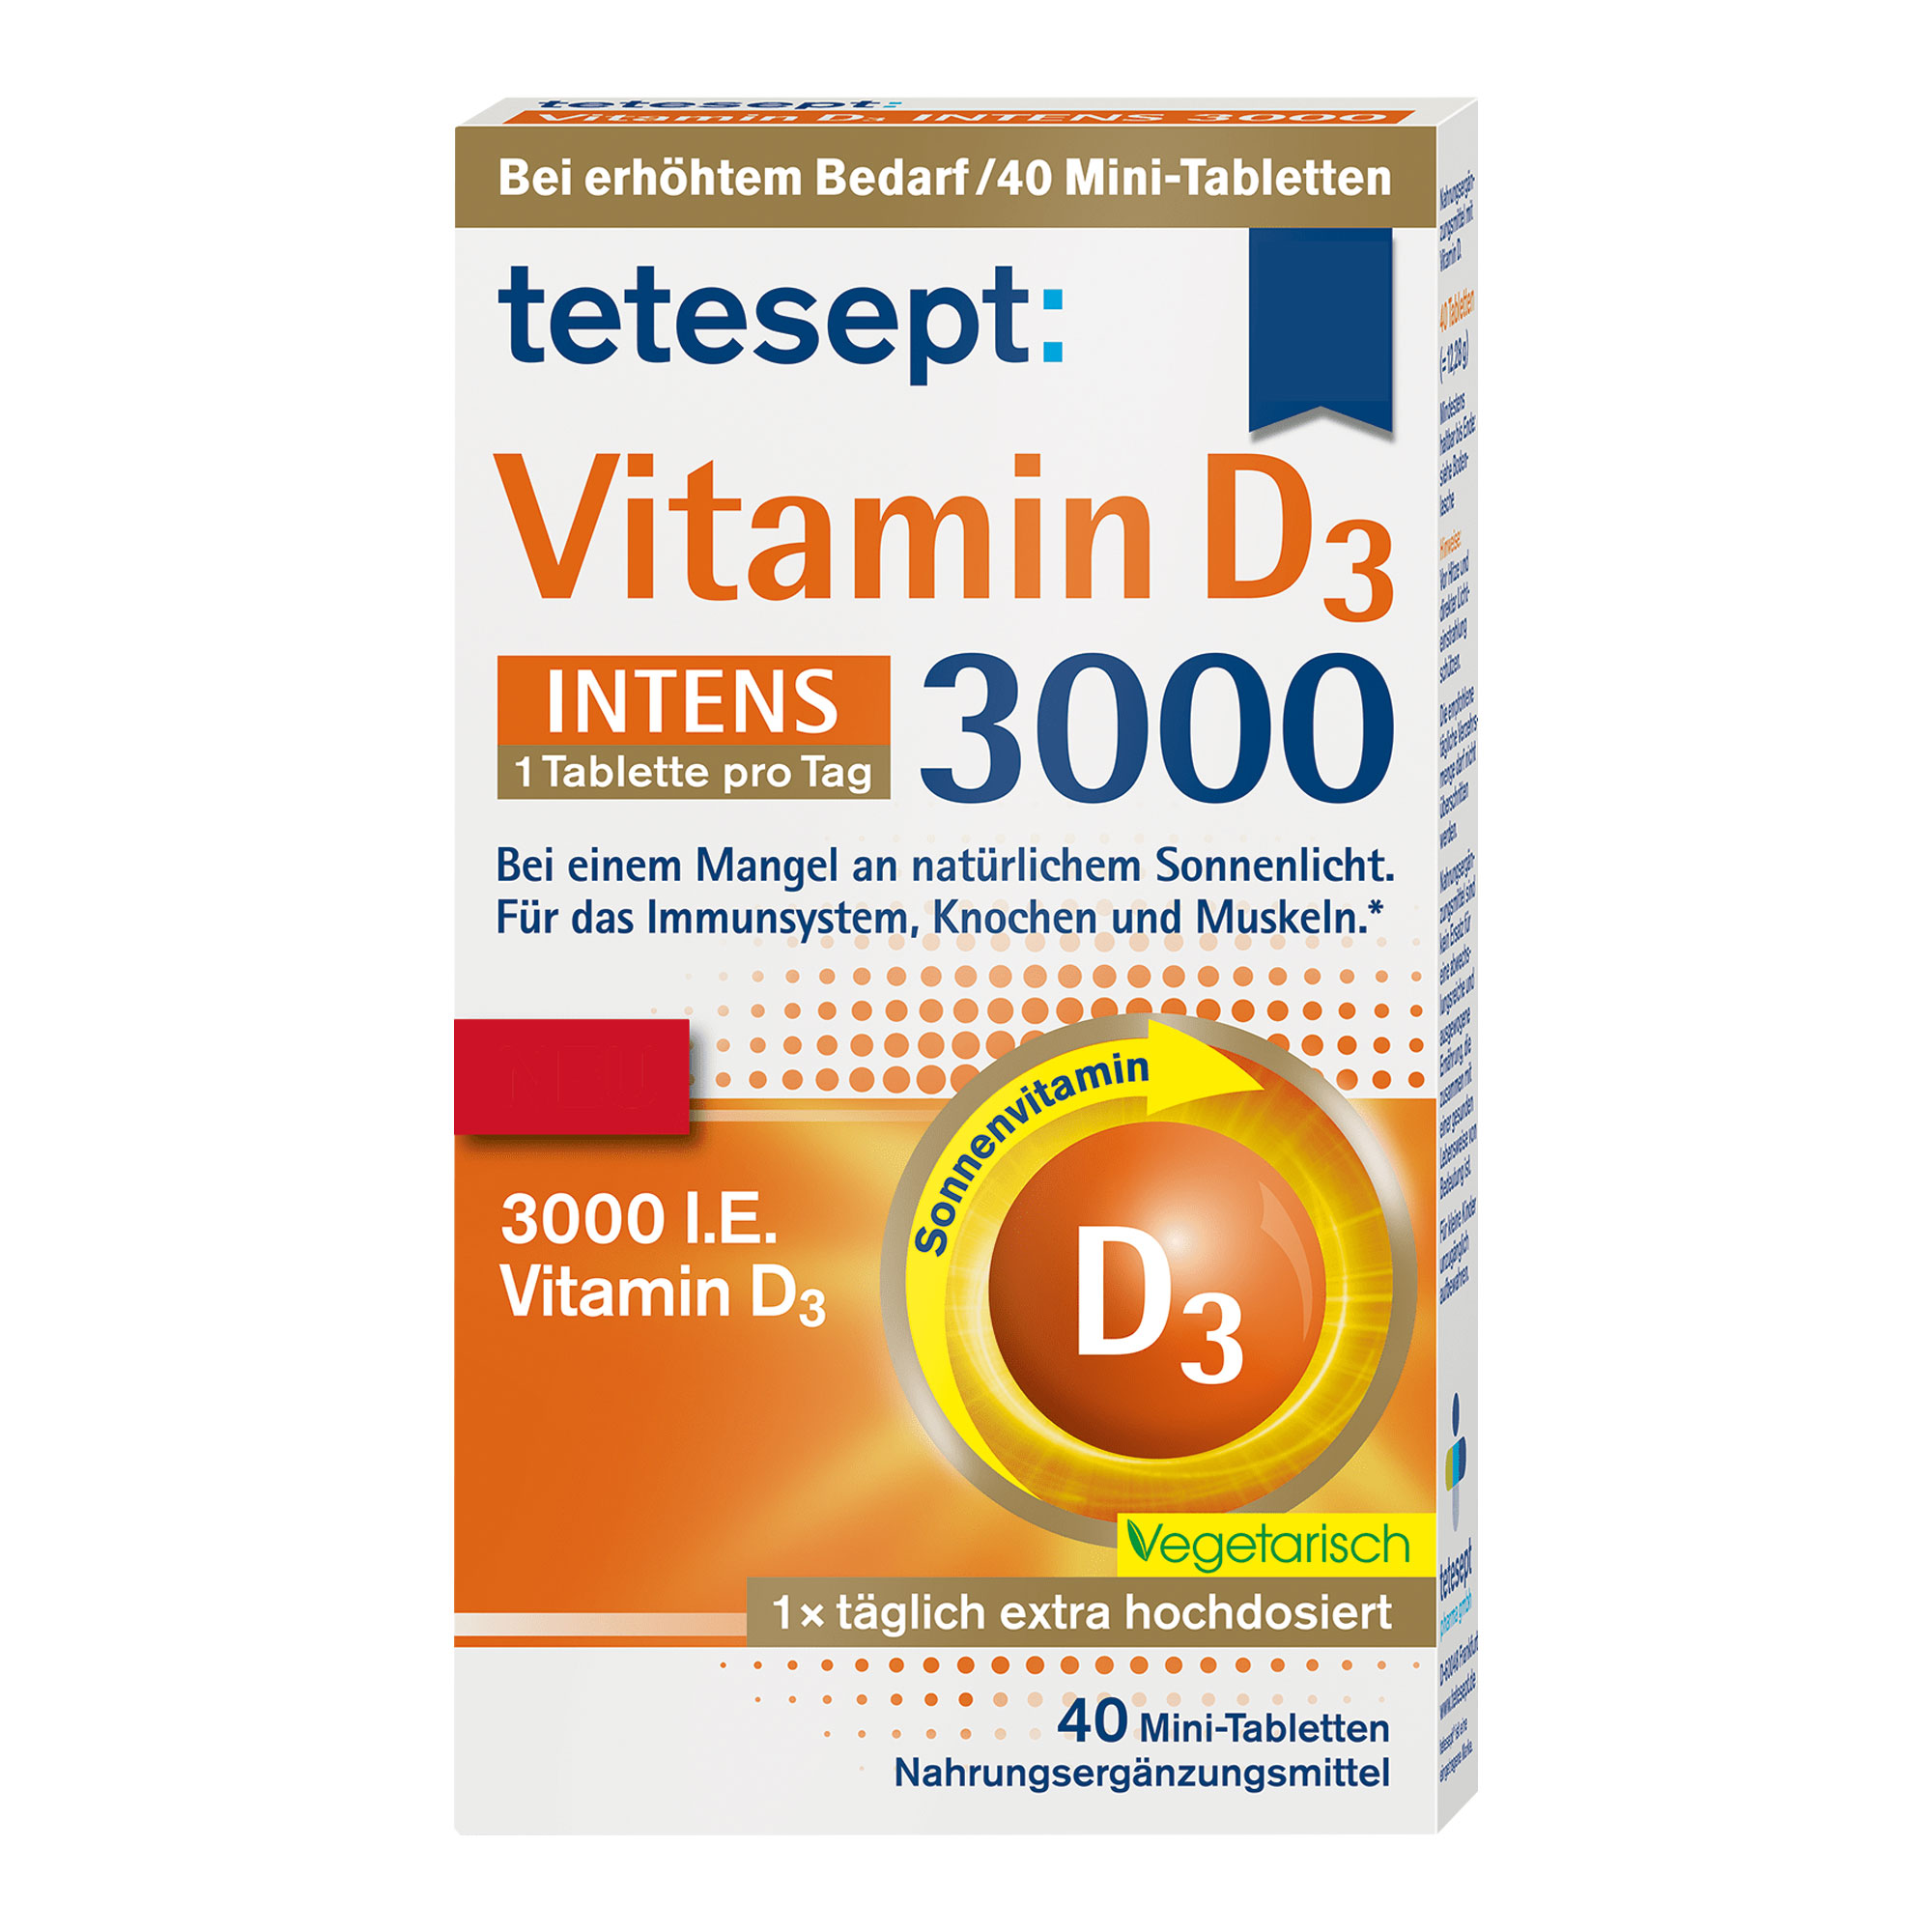 Nahrungsergänzungsmittel mit hochdosiertem Vitamin D3. Vegetarisch.